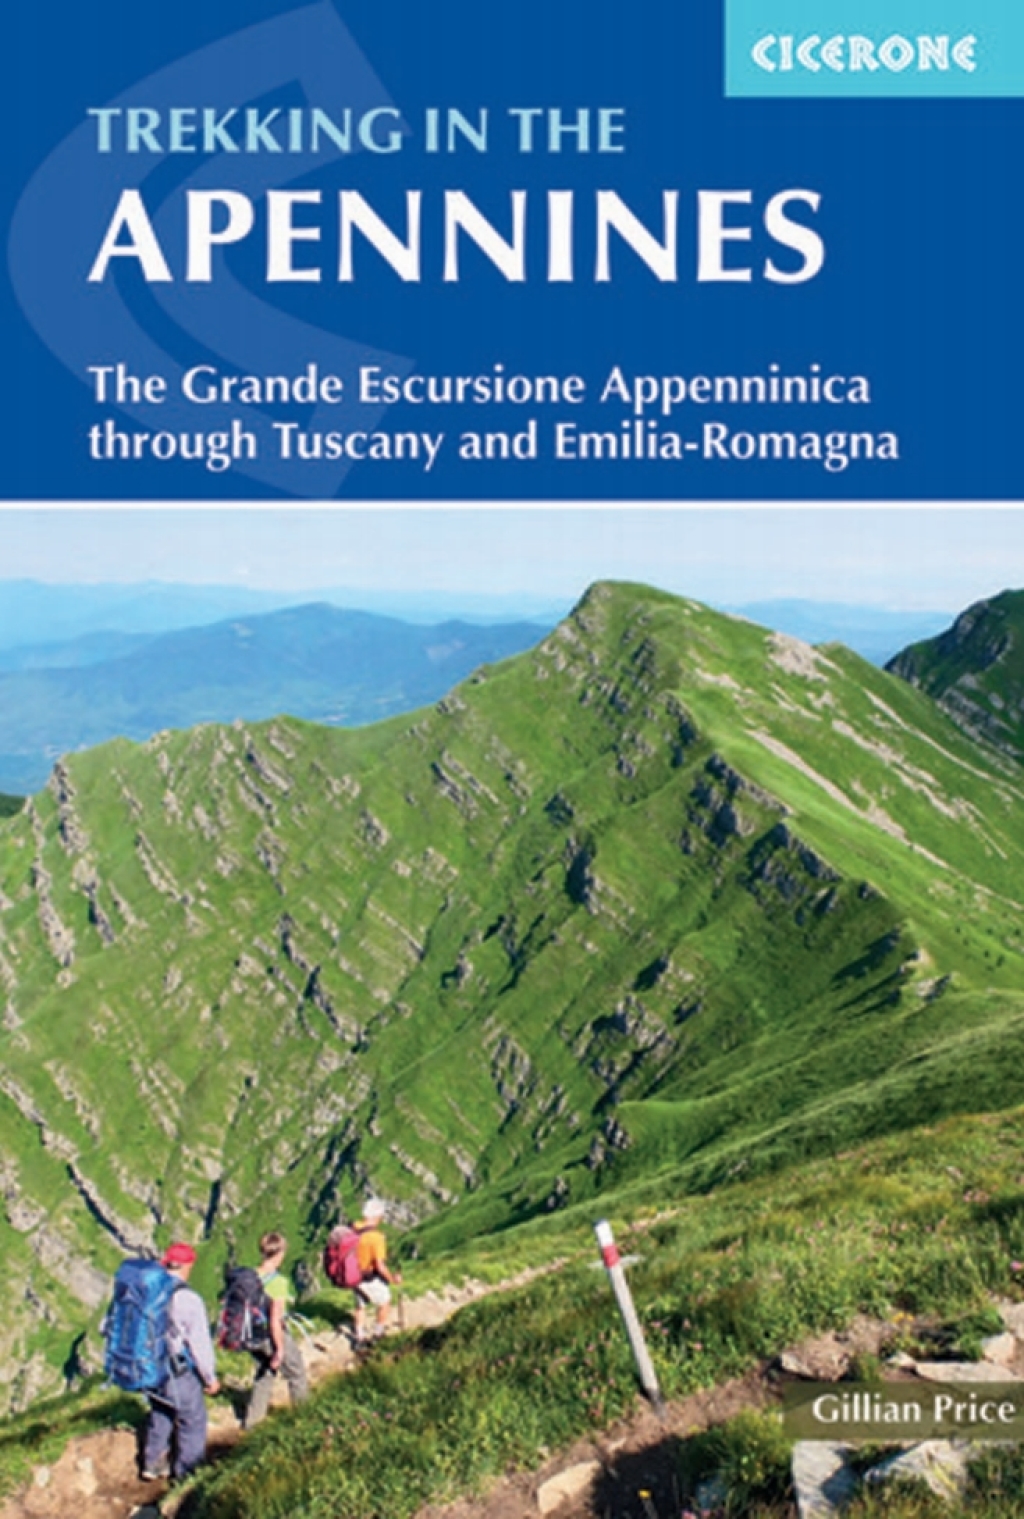 Trekking in the Apennines (eBook) - Gillian Price